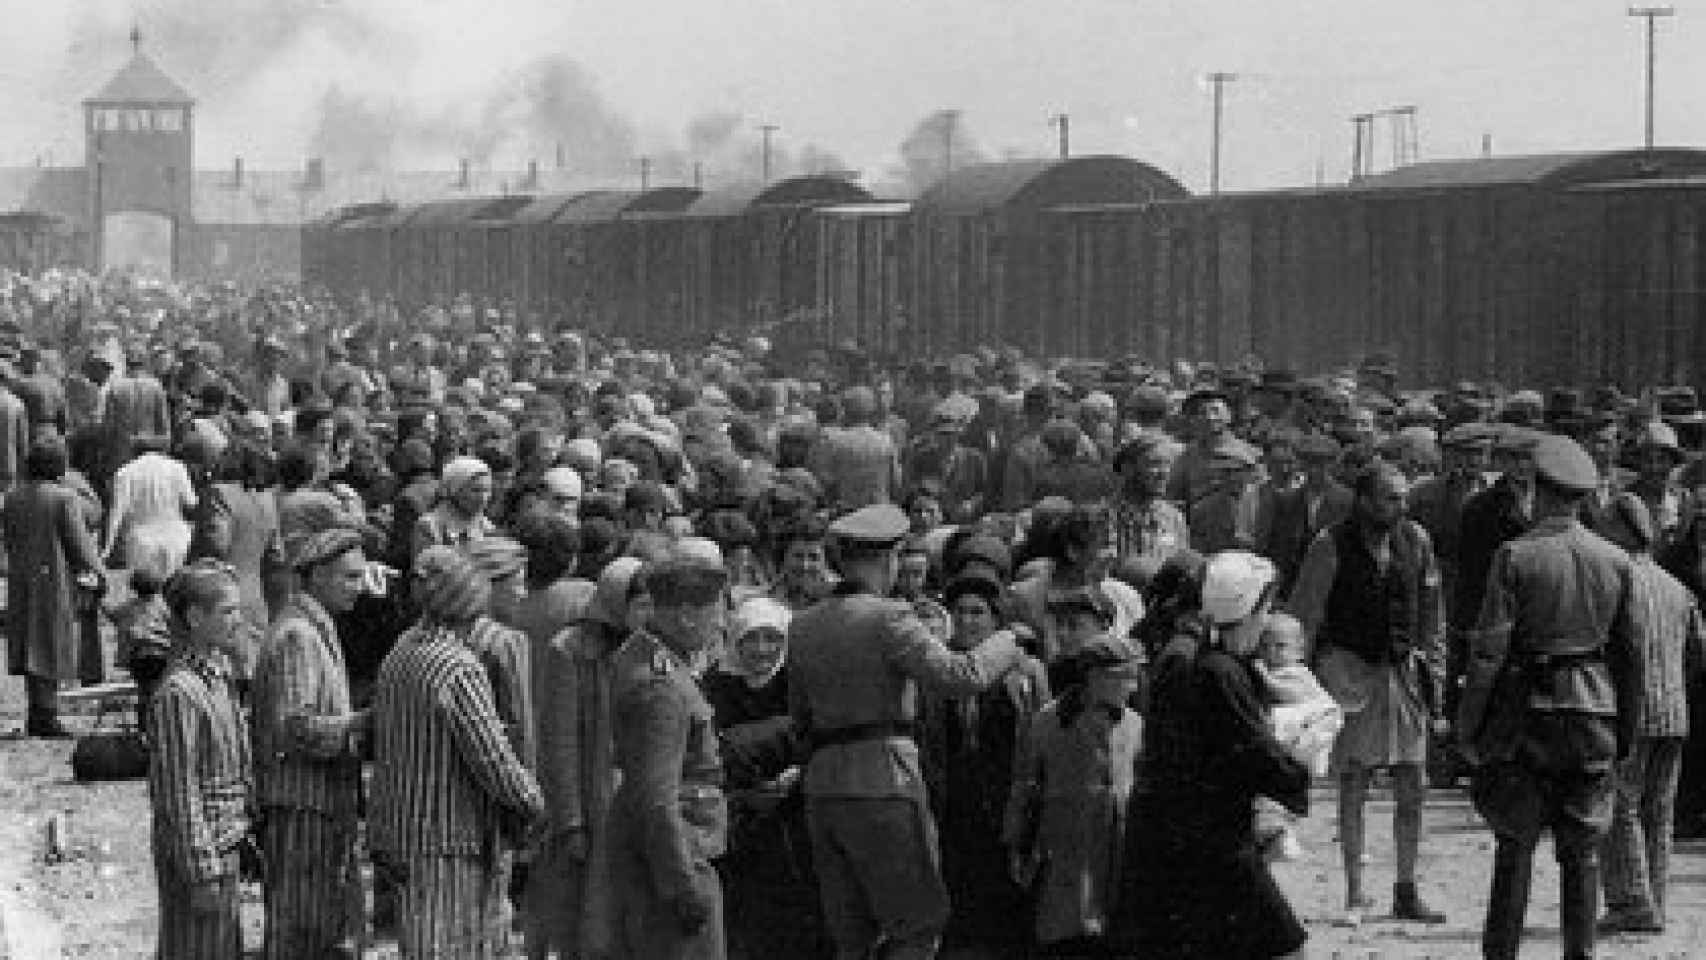 Prisioneros llegando al campo de concentración de Auschwitz.